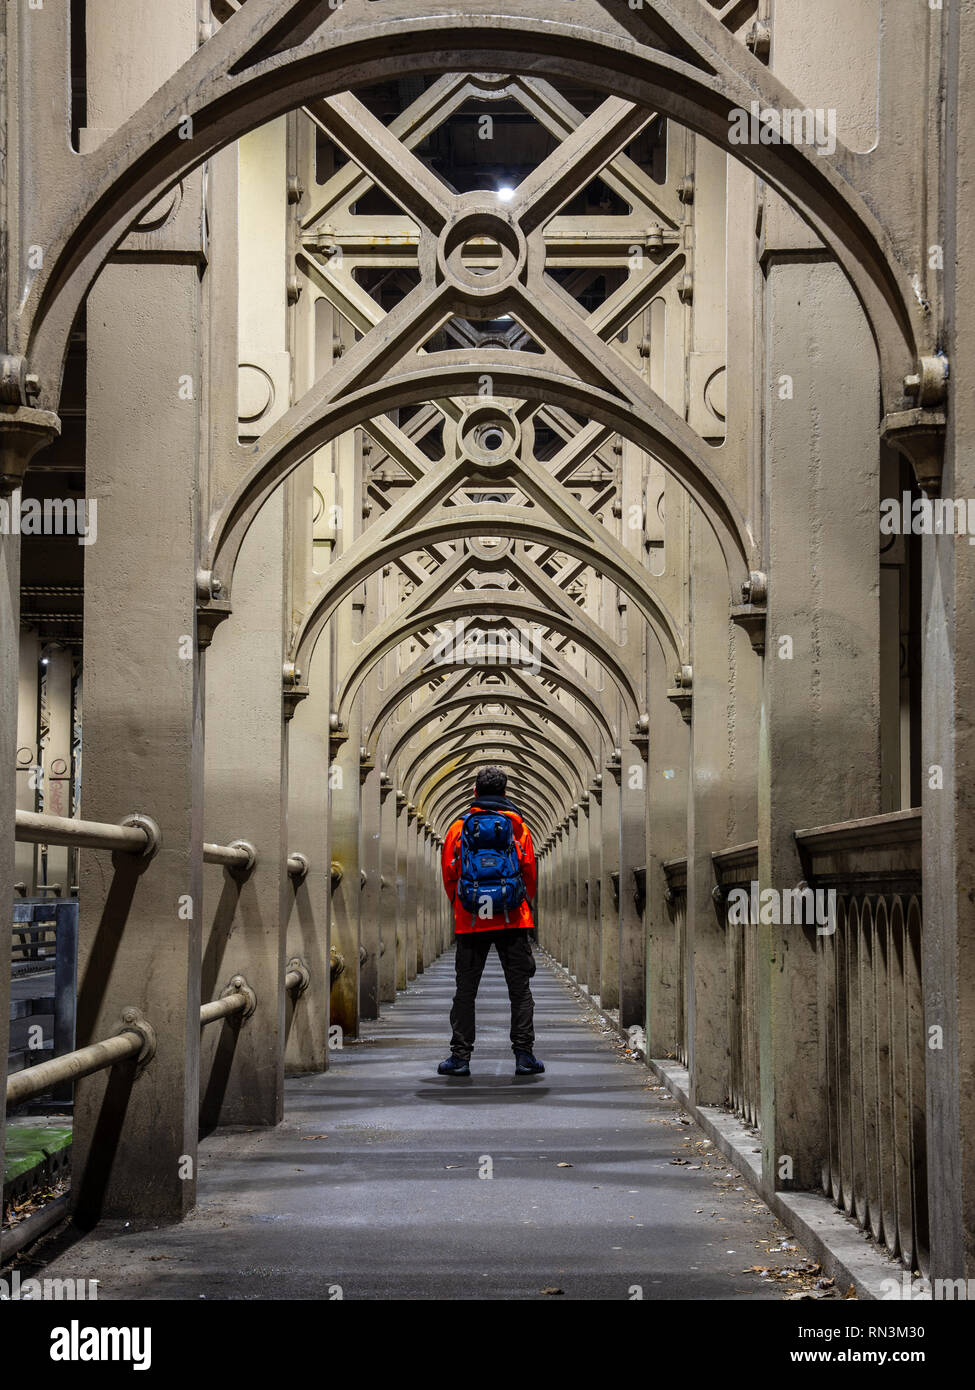 Un homme se tient sur le chemin de fer récurrent qui prend en charge les arches du fleuve Tyne Bridge de haut niveau entre Newcastle et Gateshead. Banque D'Images